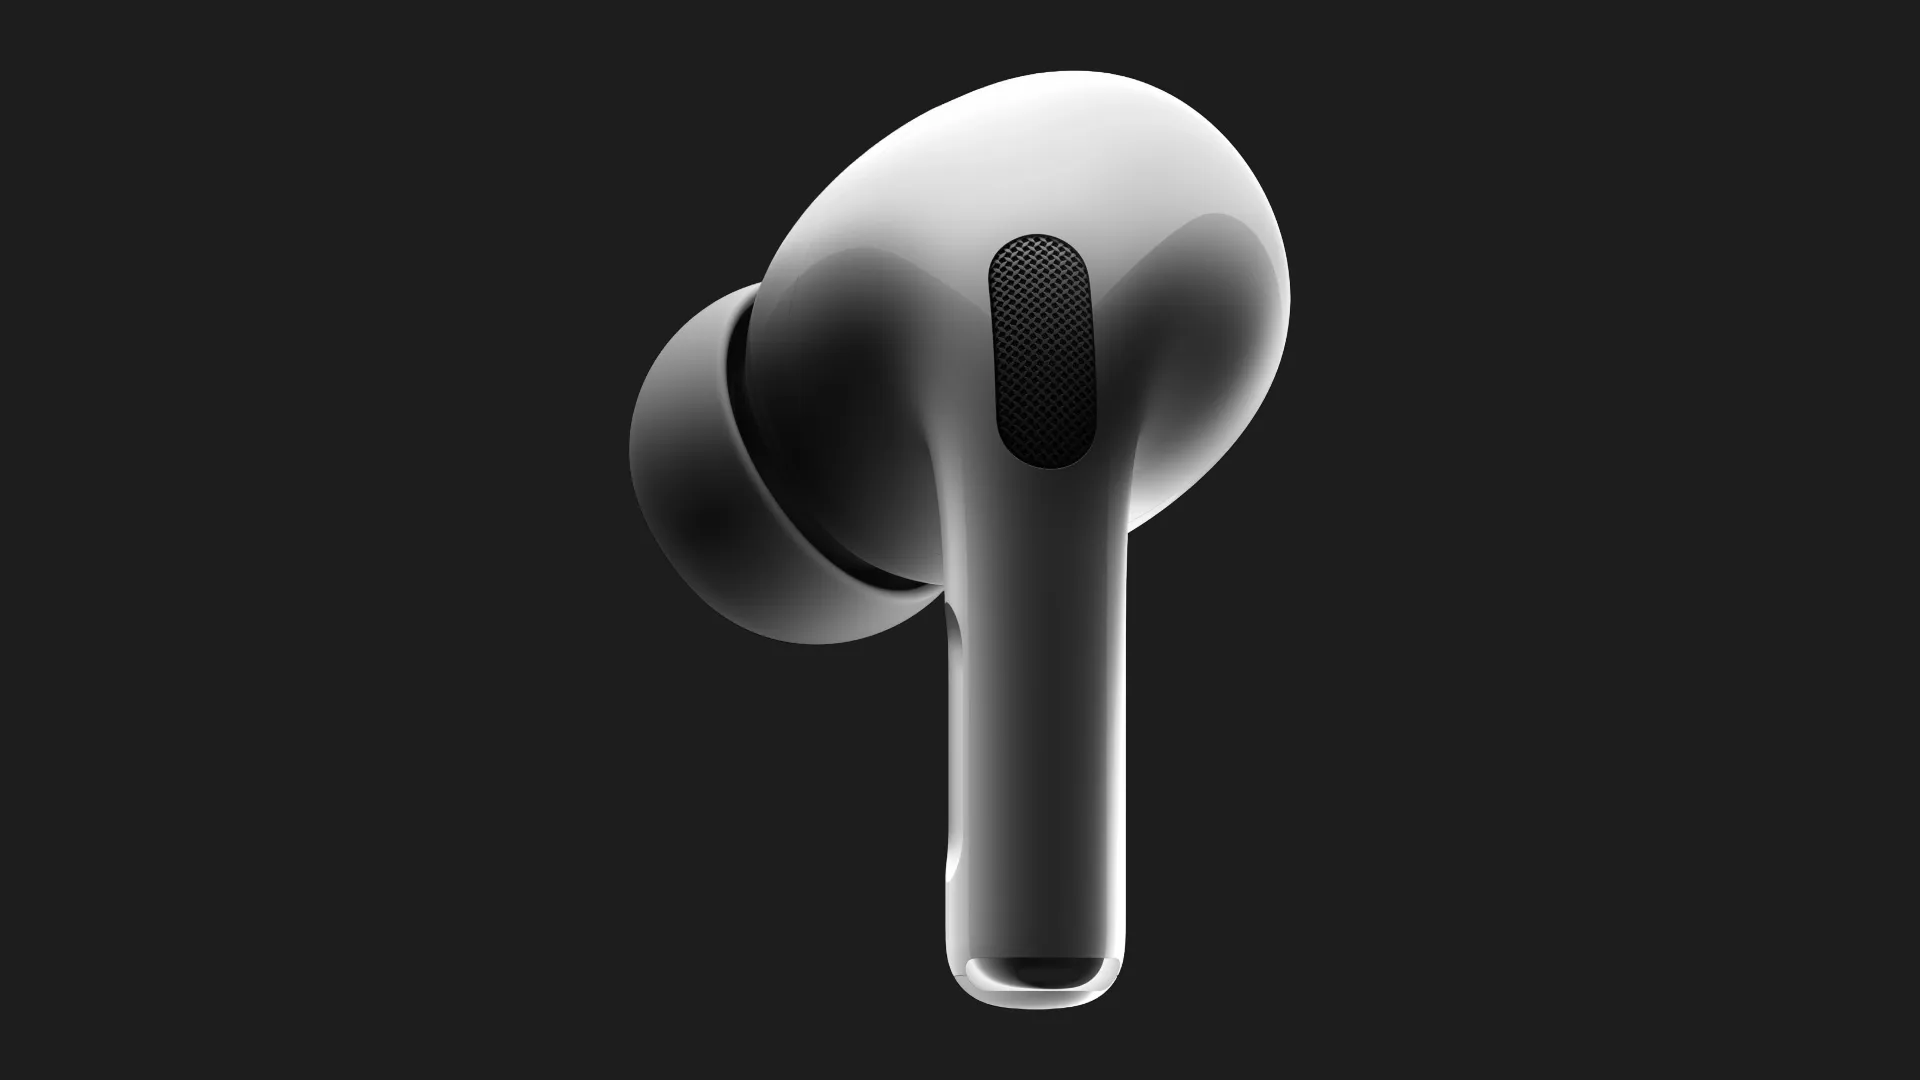 Правий навушник для Apple AirPods Pro 2 (MQD83)